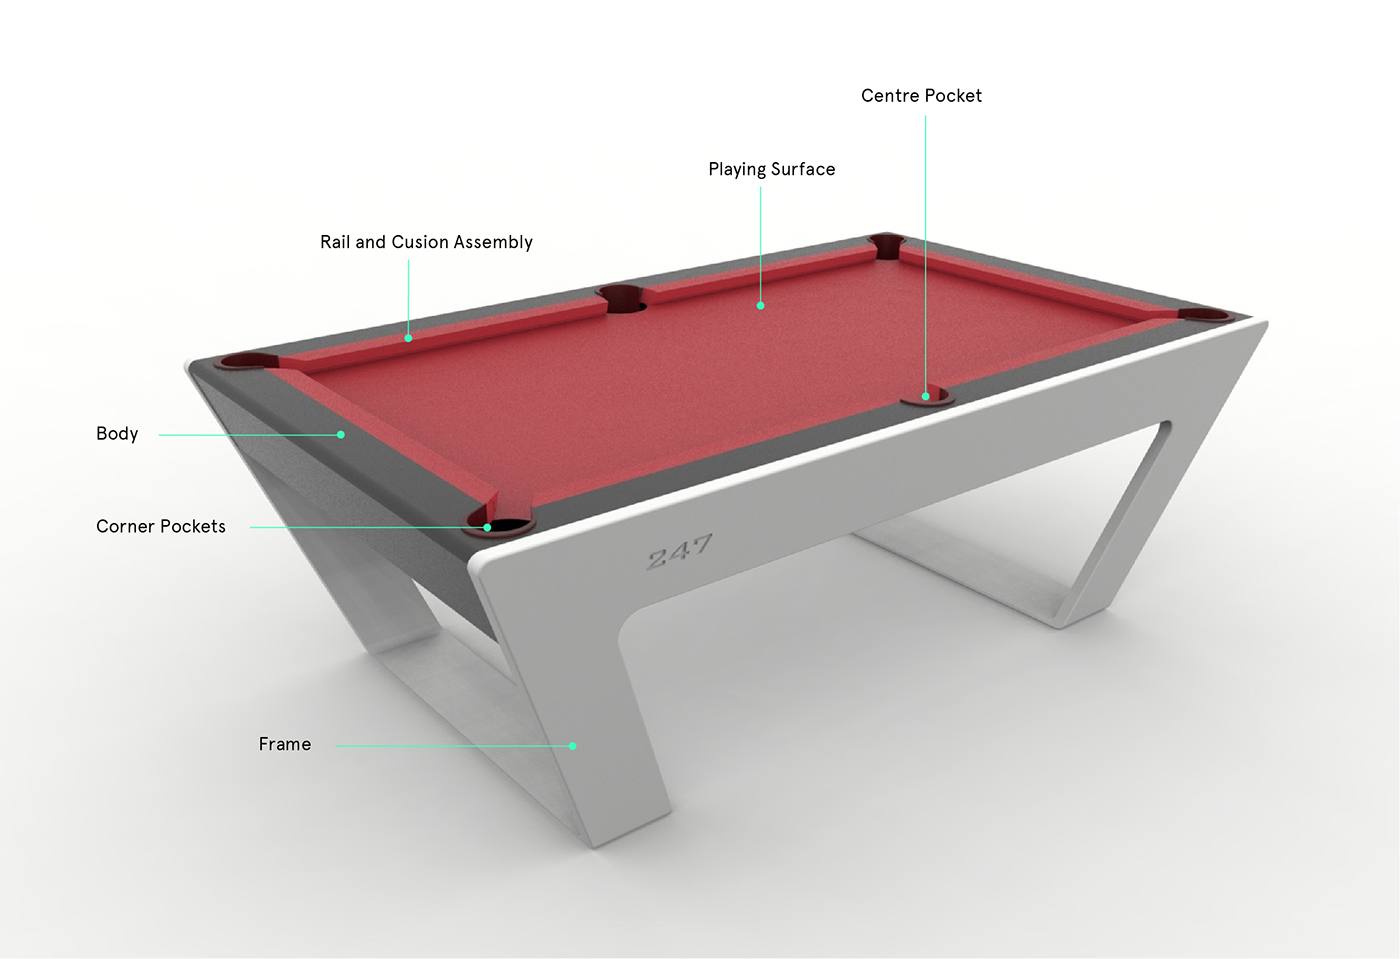 3dmodeling porsche design Pool Table Solidworks rendering